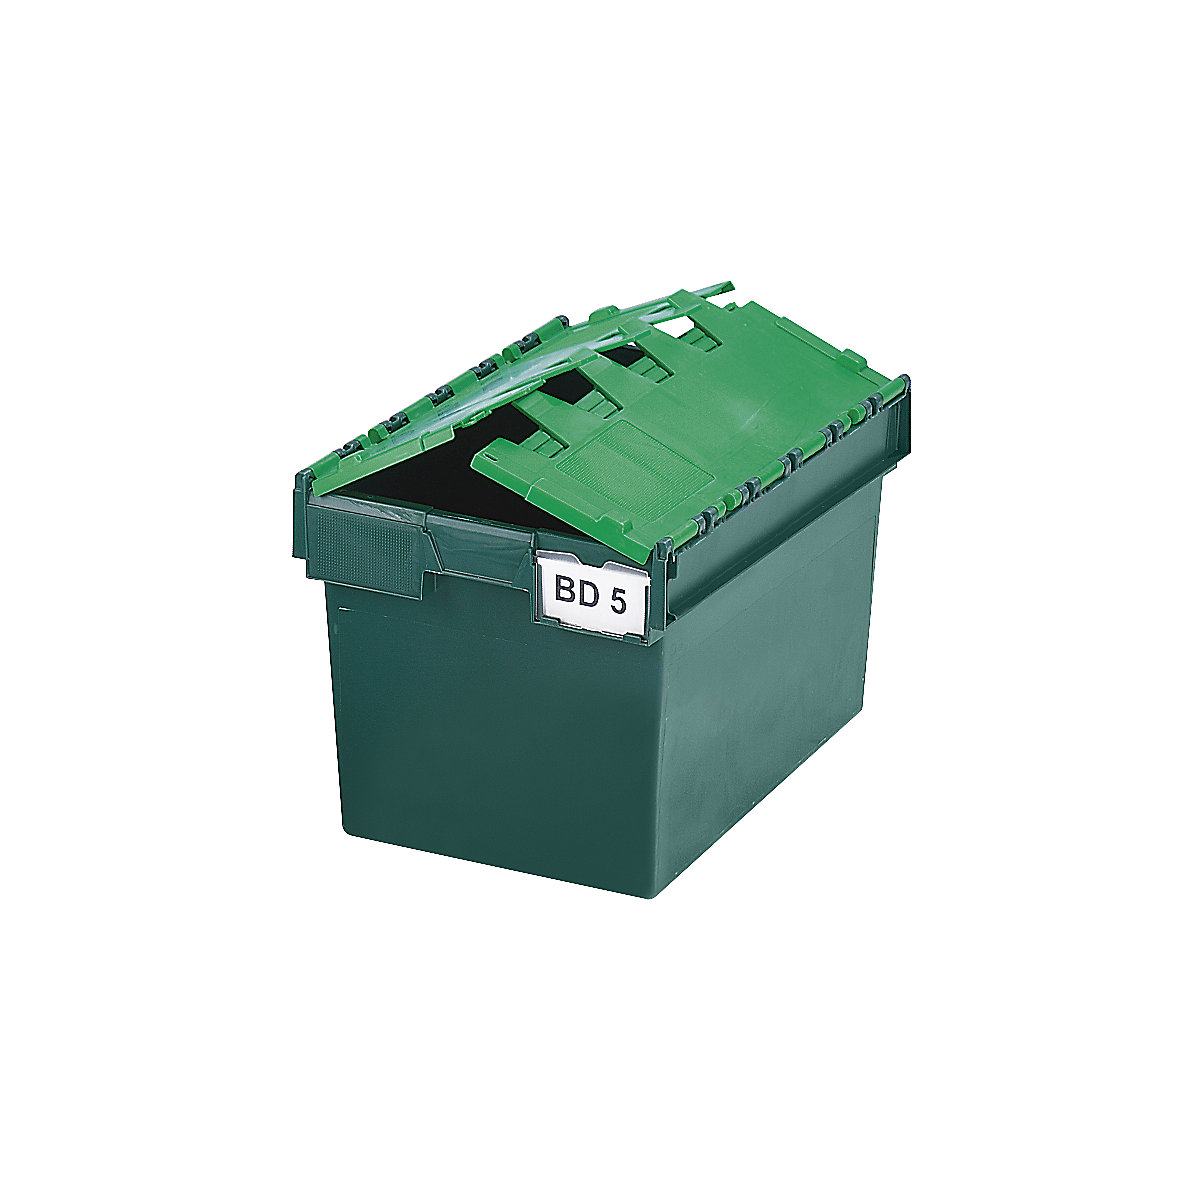 Recipiente empilhável e retornável com tampa articulada, volume 64 litros, CxLxA 600 x 400 x 365 mm, verde, a partir de 10 unid.